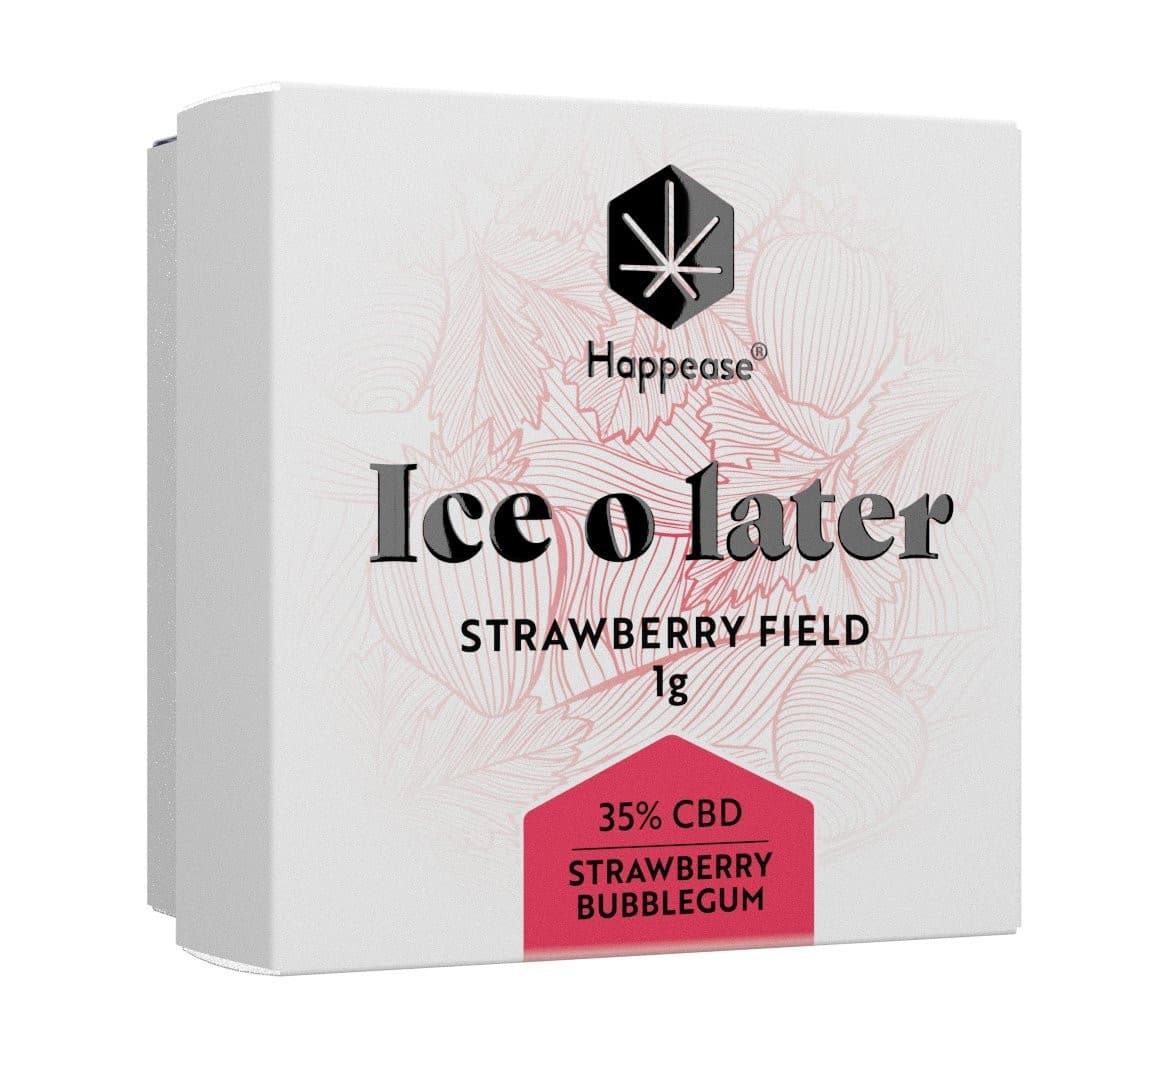 Ice o Later – Happease Strawberry Field 35% CBD Extrait - Green Kartel : Votre boutique CBD spécialisée en fleur et résine CBD